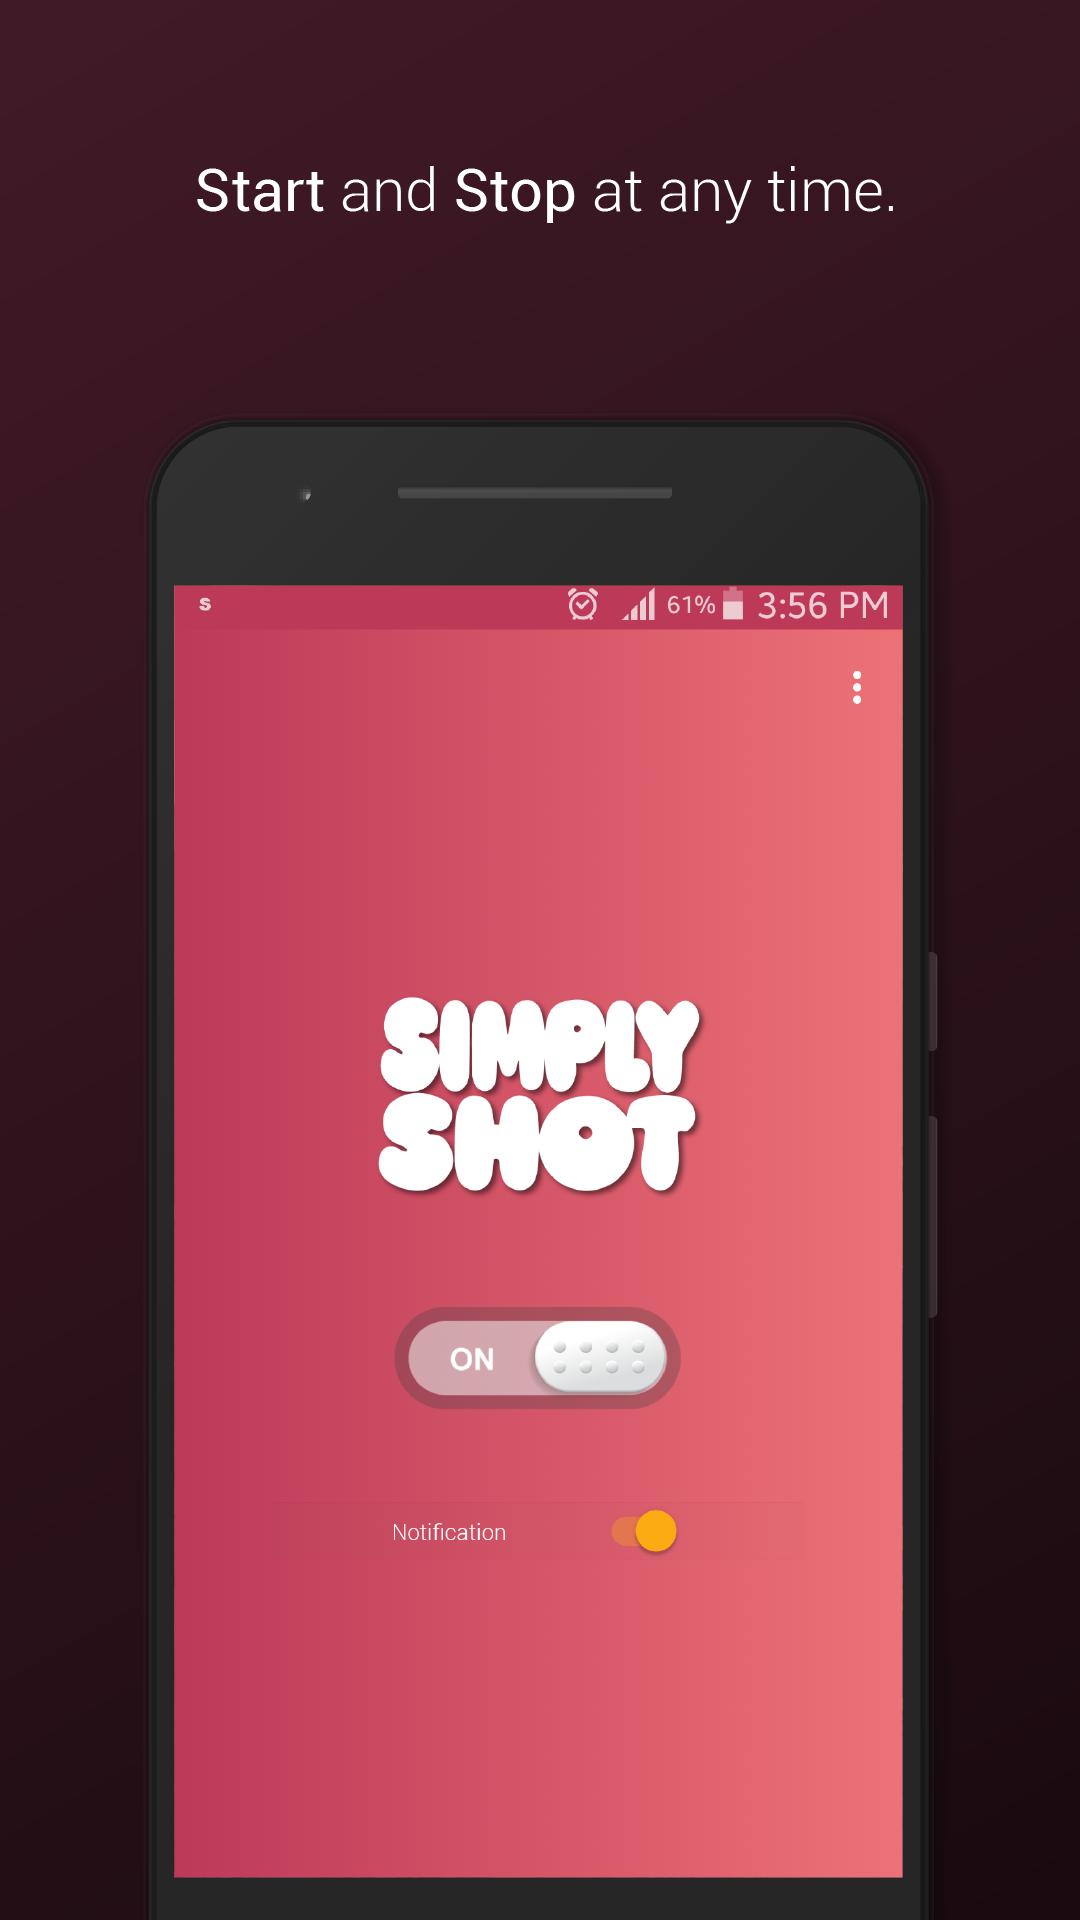 Simply приложение. Приложение shot. Отключи шот в приложении. In shot apps.